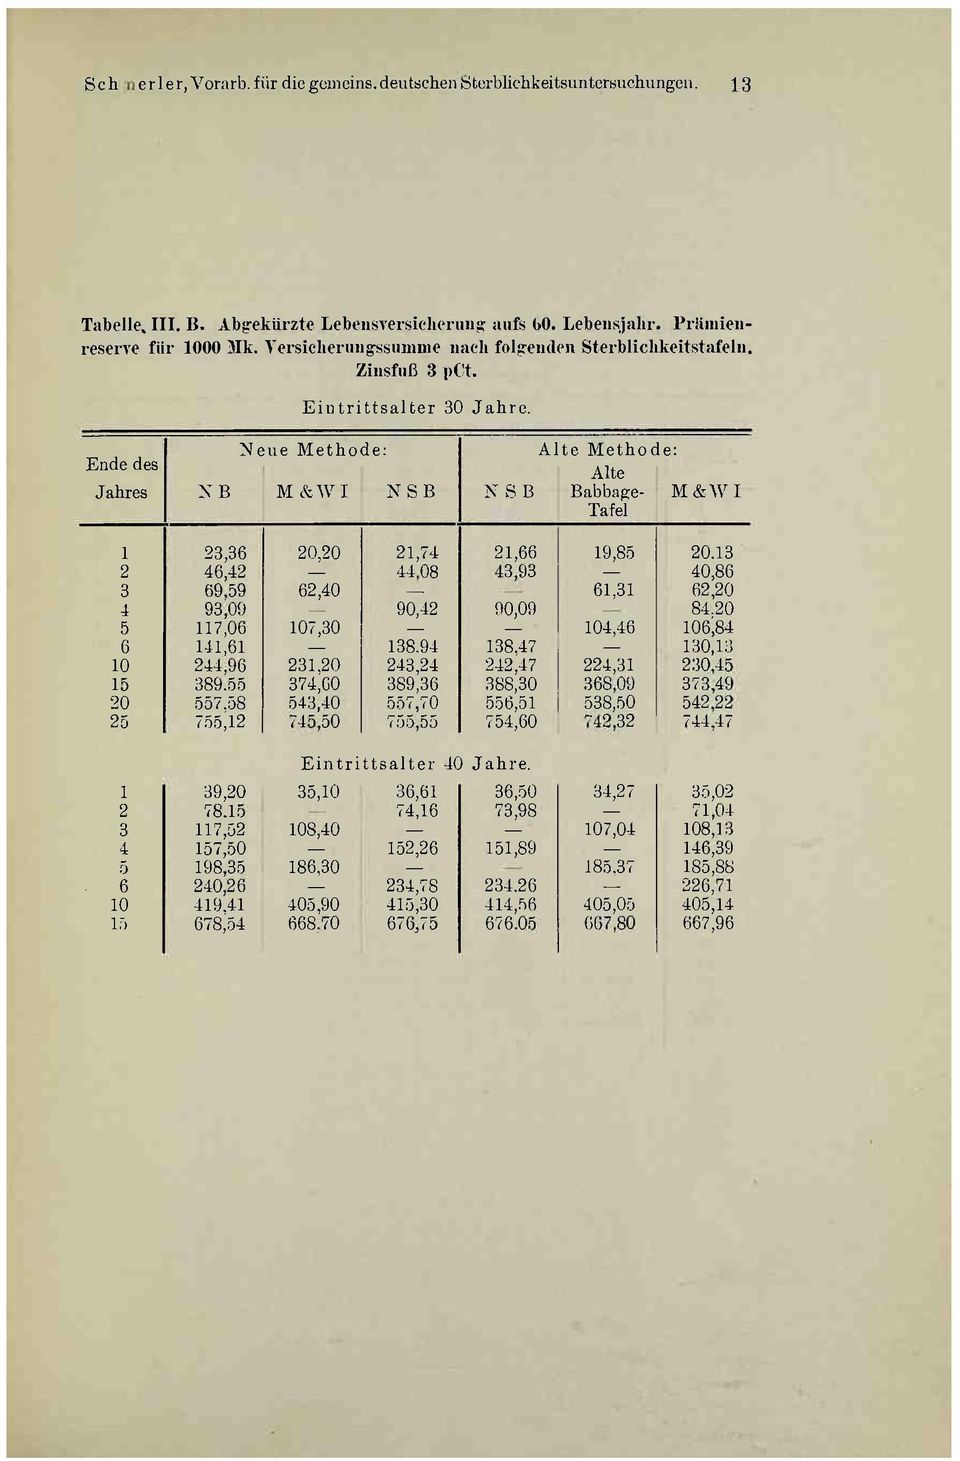 Ende des Neue Methode: Alte Methode: Alte Jahres NB M &WI NSB NSB Babbage- M&WI Tafel 1 23,36 20,20 21,74 21,66 19,85 20.